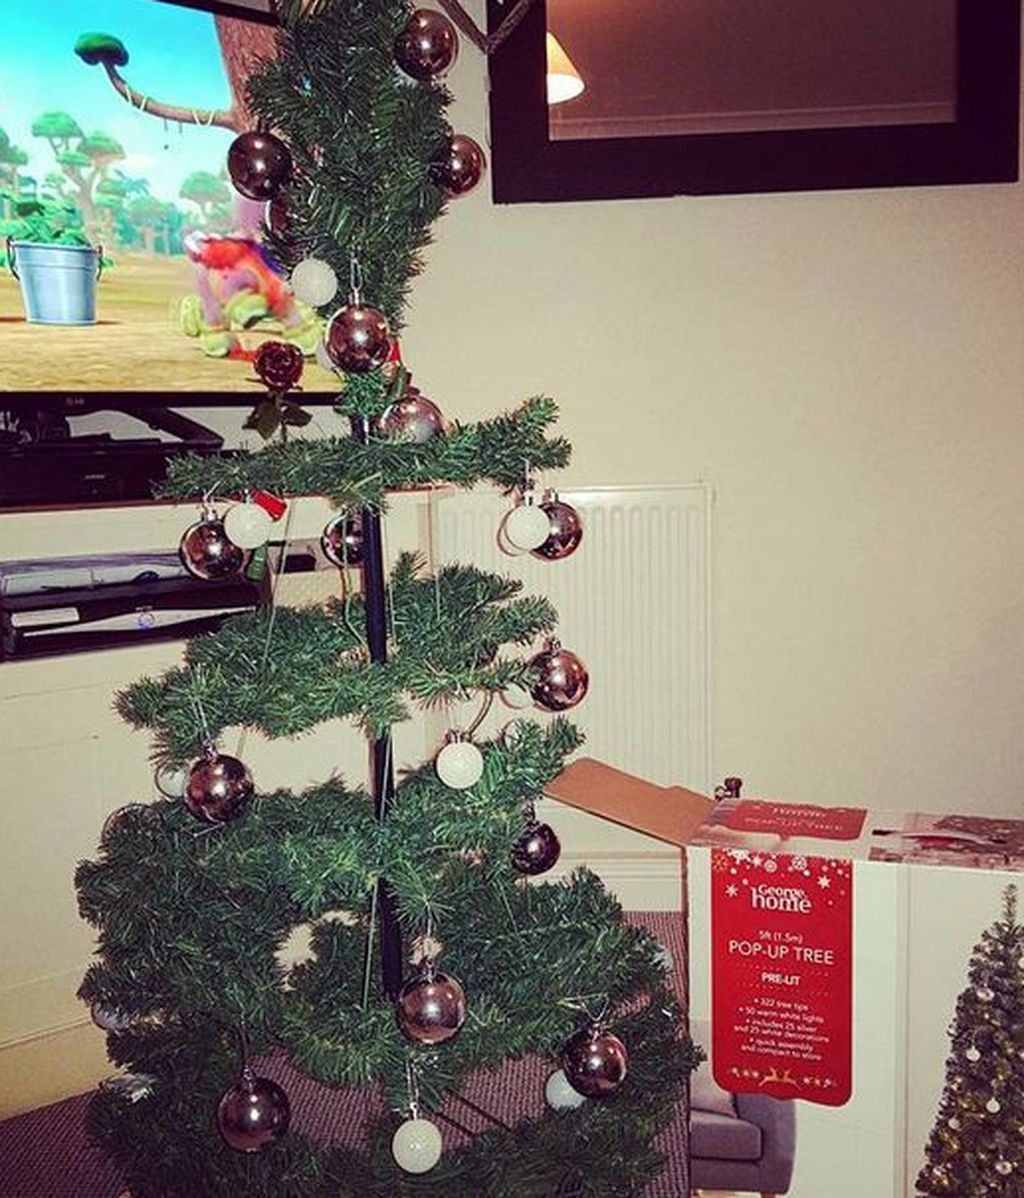 El árbol de Navidad que compró la familia de Chloe